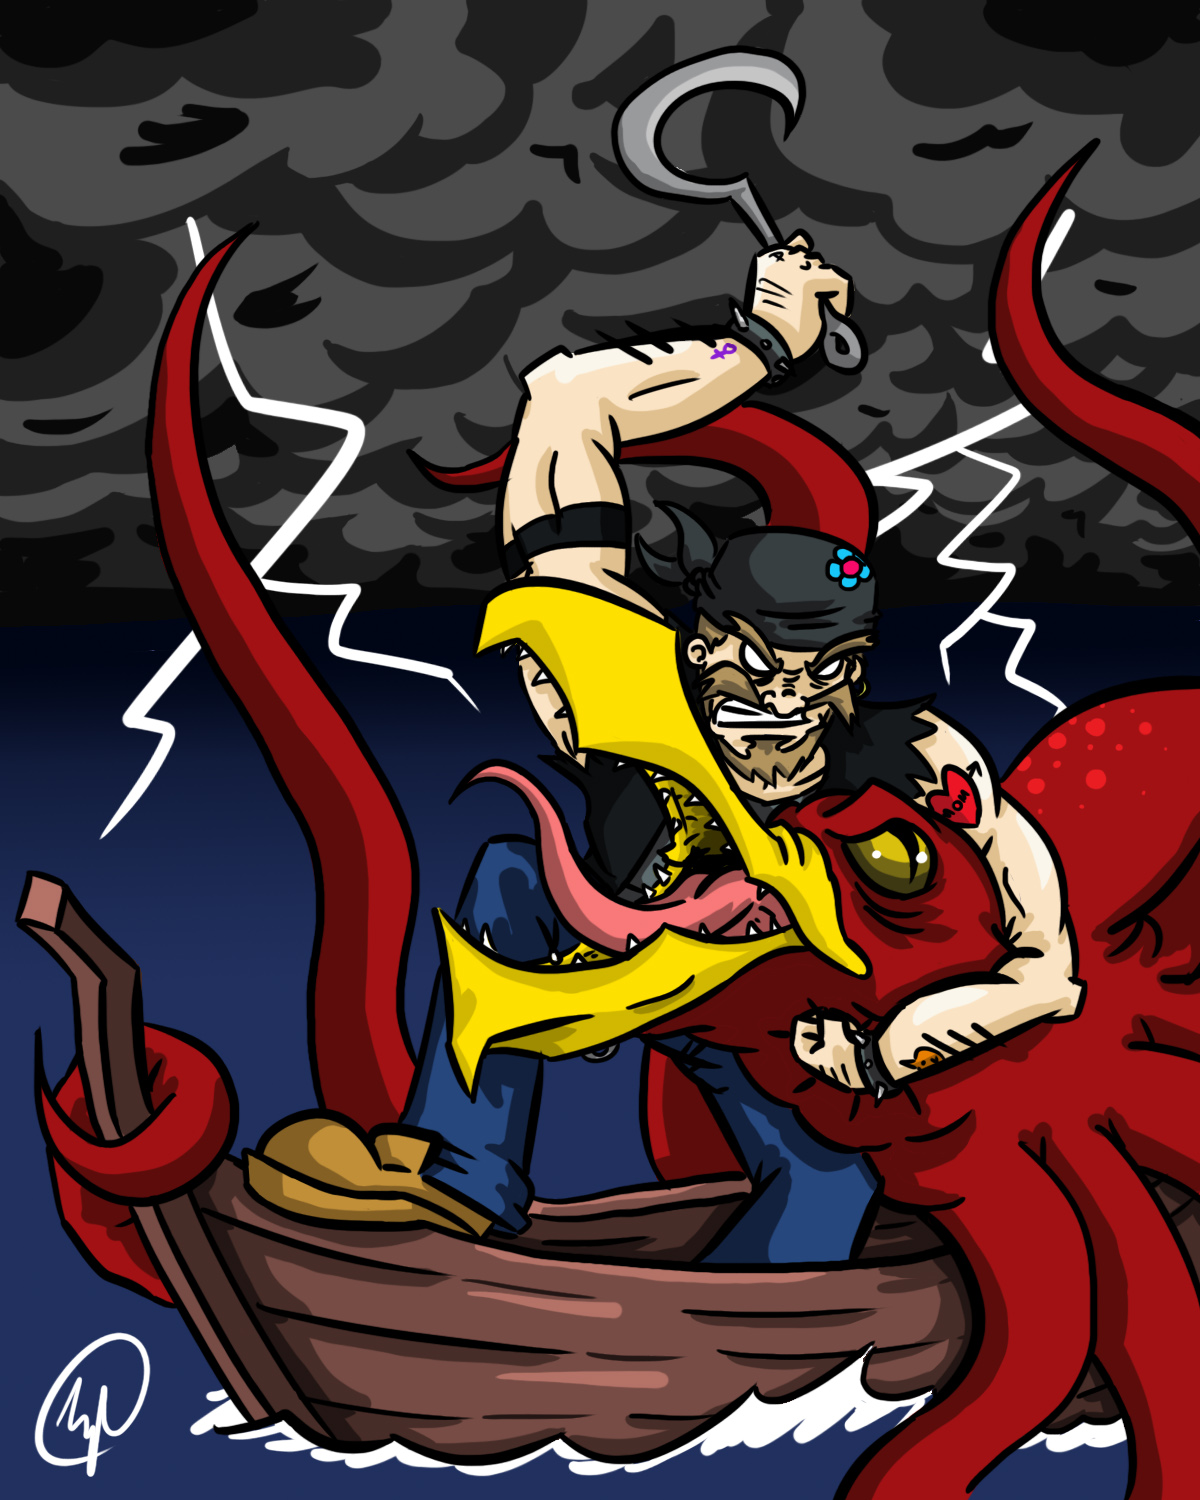 Cousin Paul vs. The Kraken